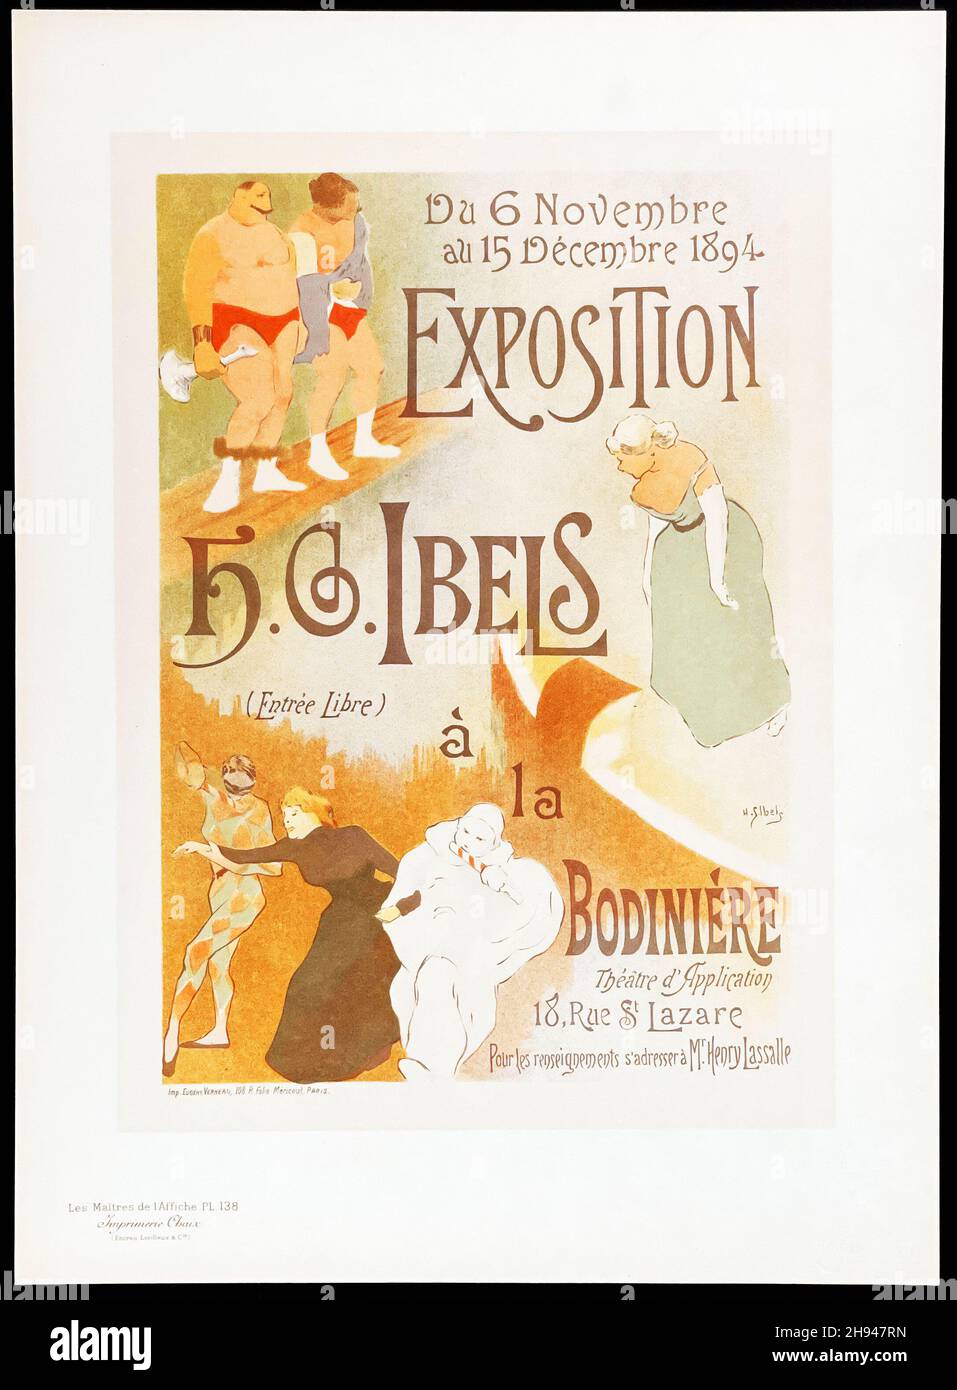 Les Maîtres de l'affiche V 3 - Plate 138 - H-G Ibels, Exposition Stock Photo